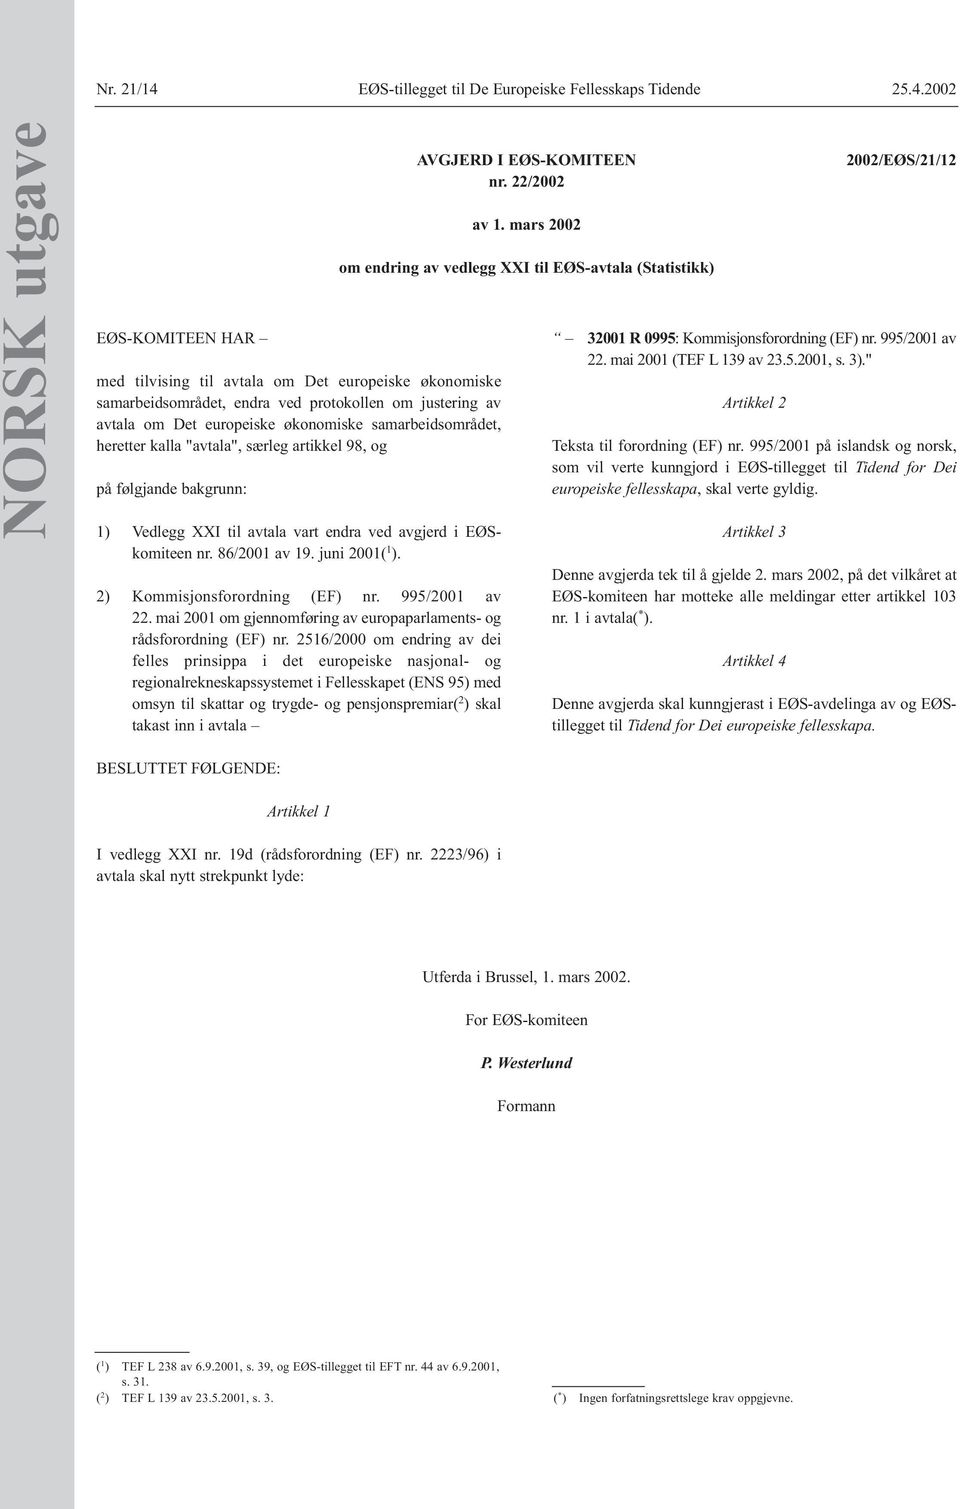 2002 NORSK utgave EØS-KOMITEEN HAR med tilvising til avtala om Det europeiske økonomiske samarbeidsområdet, endra ved protokollen om justering av avtala om Det europeiske økonomiske